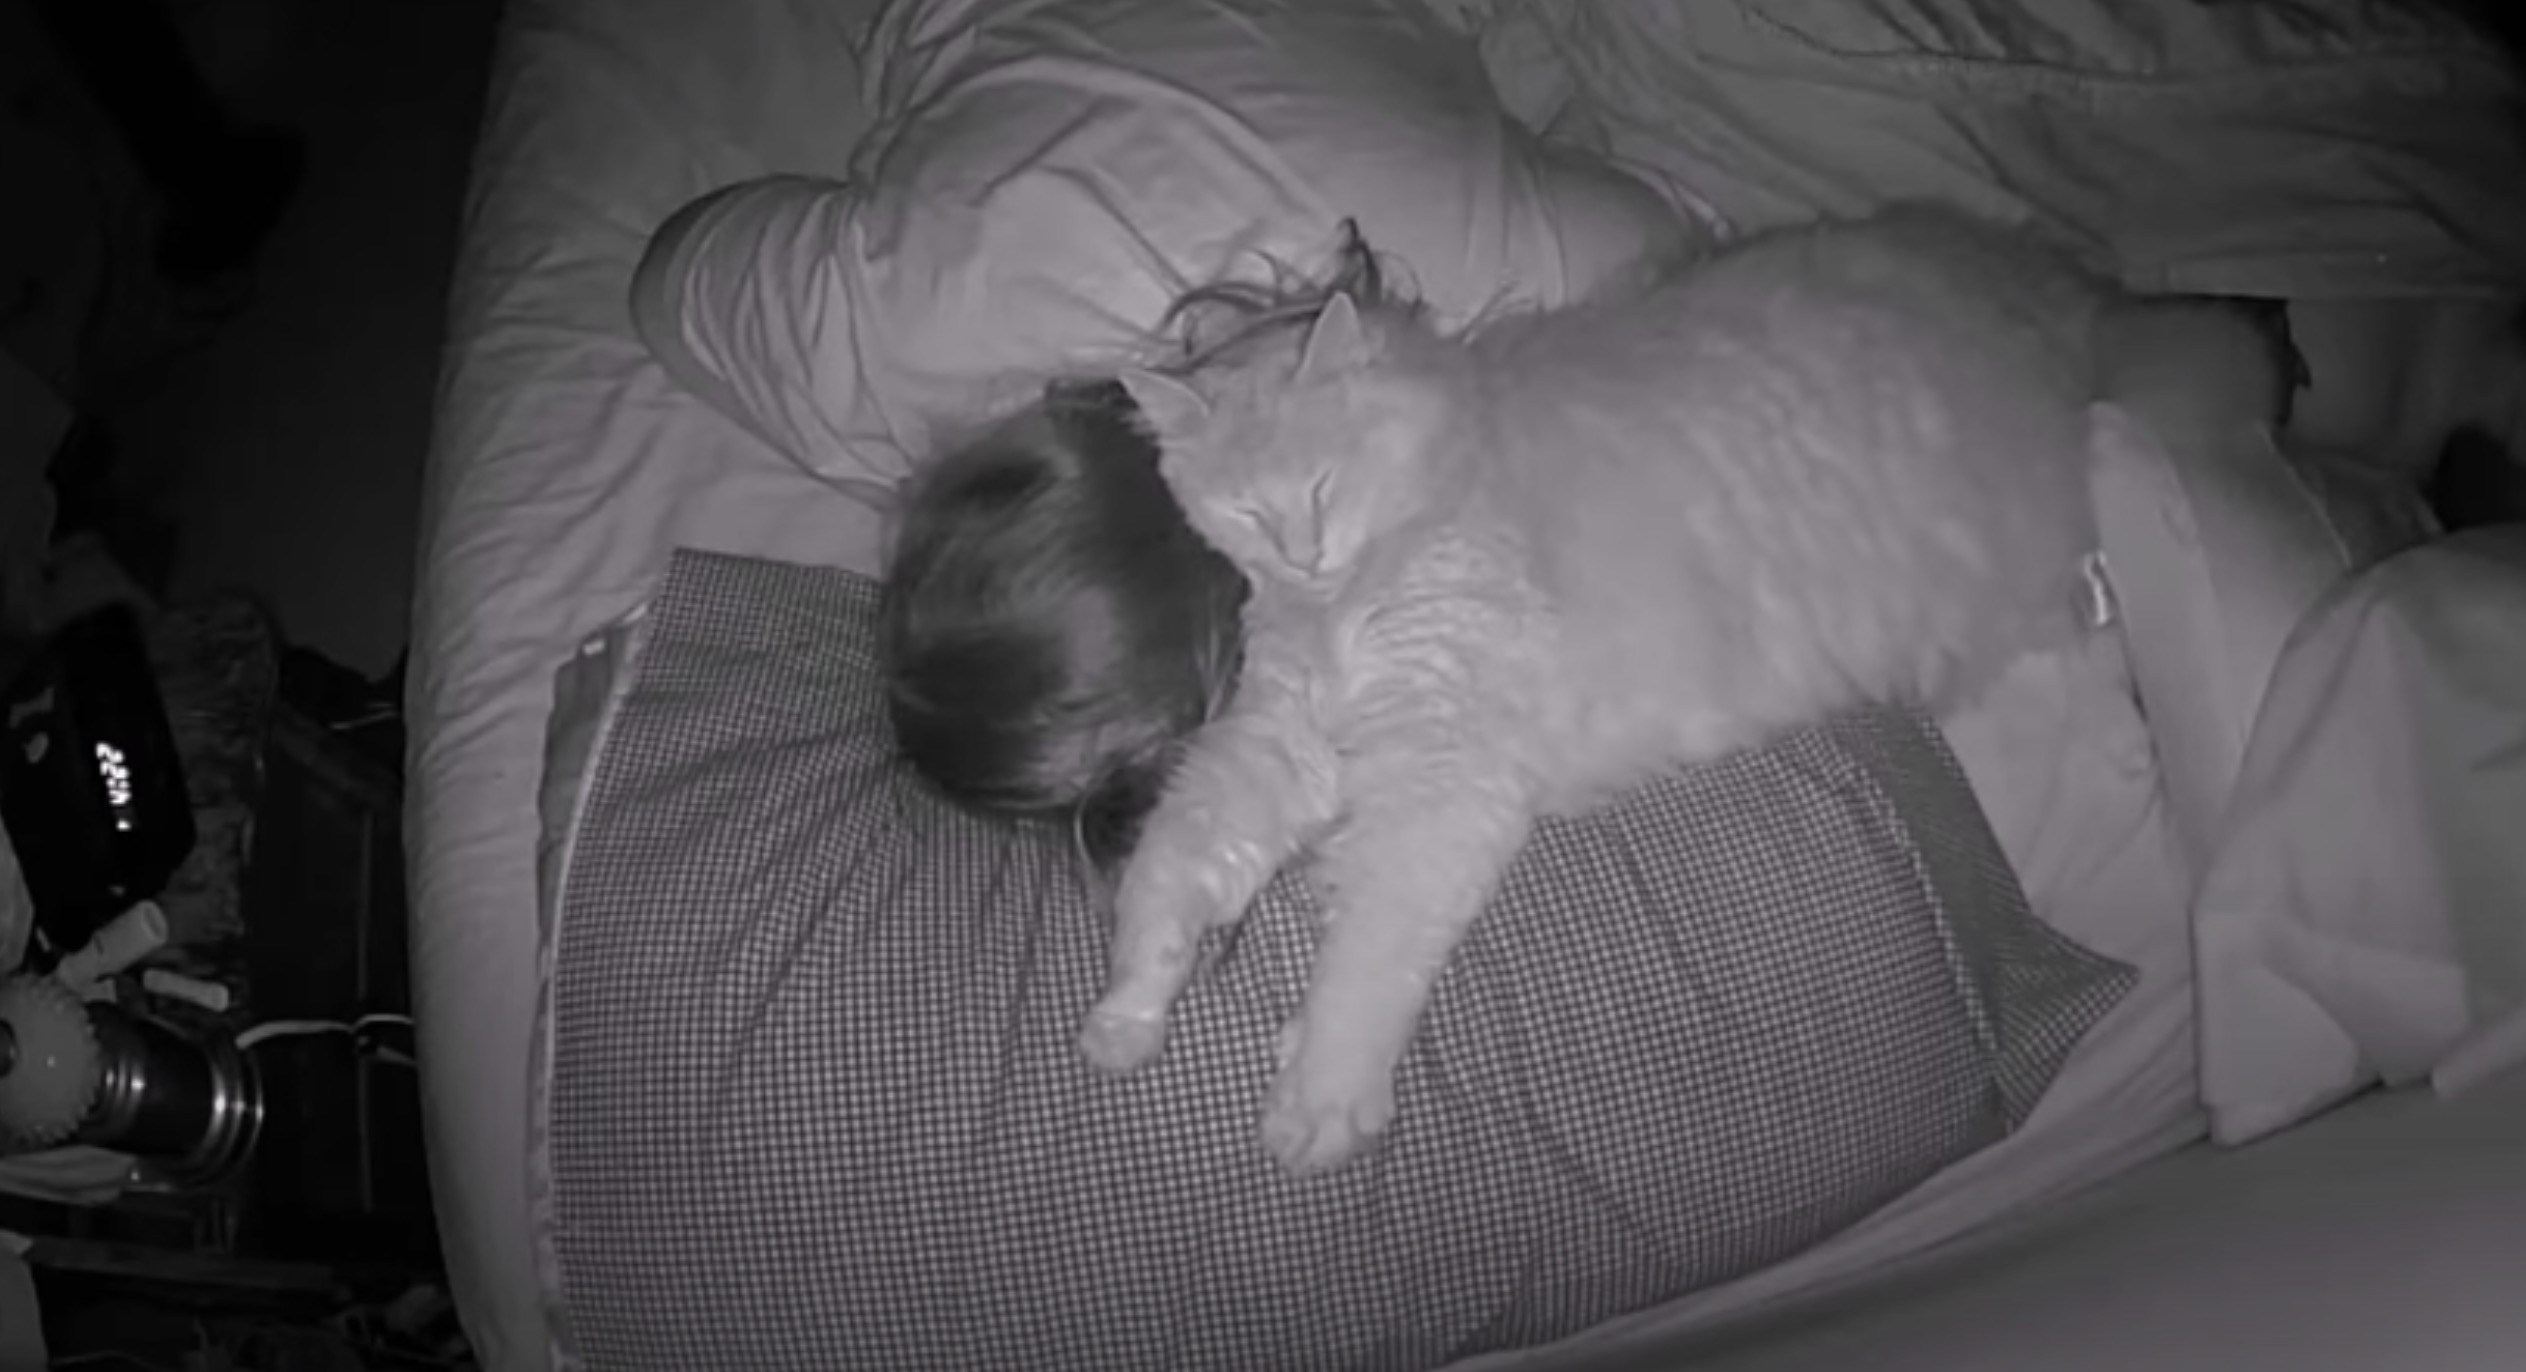 飼い主は猫の枕になるものの、猫が枕になることはなし